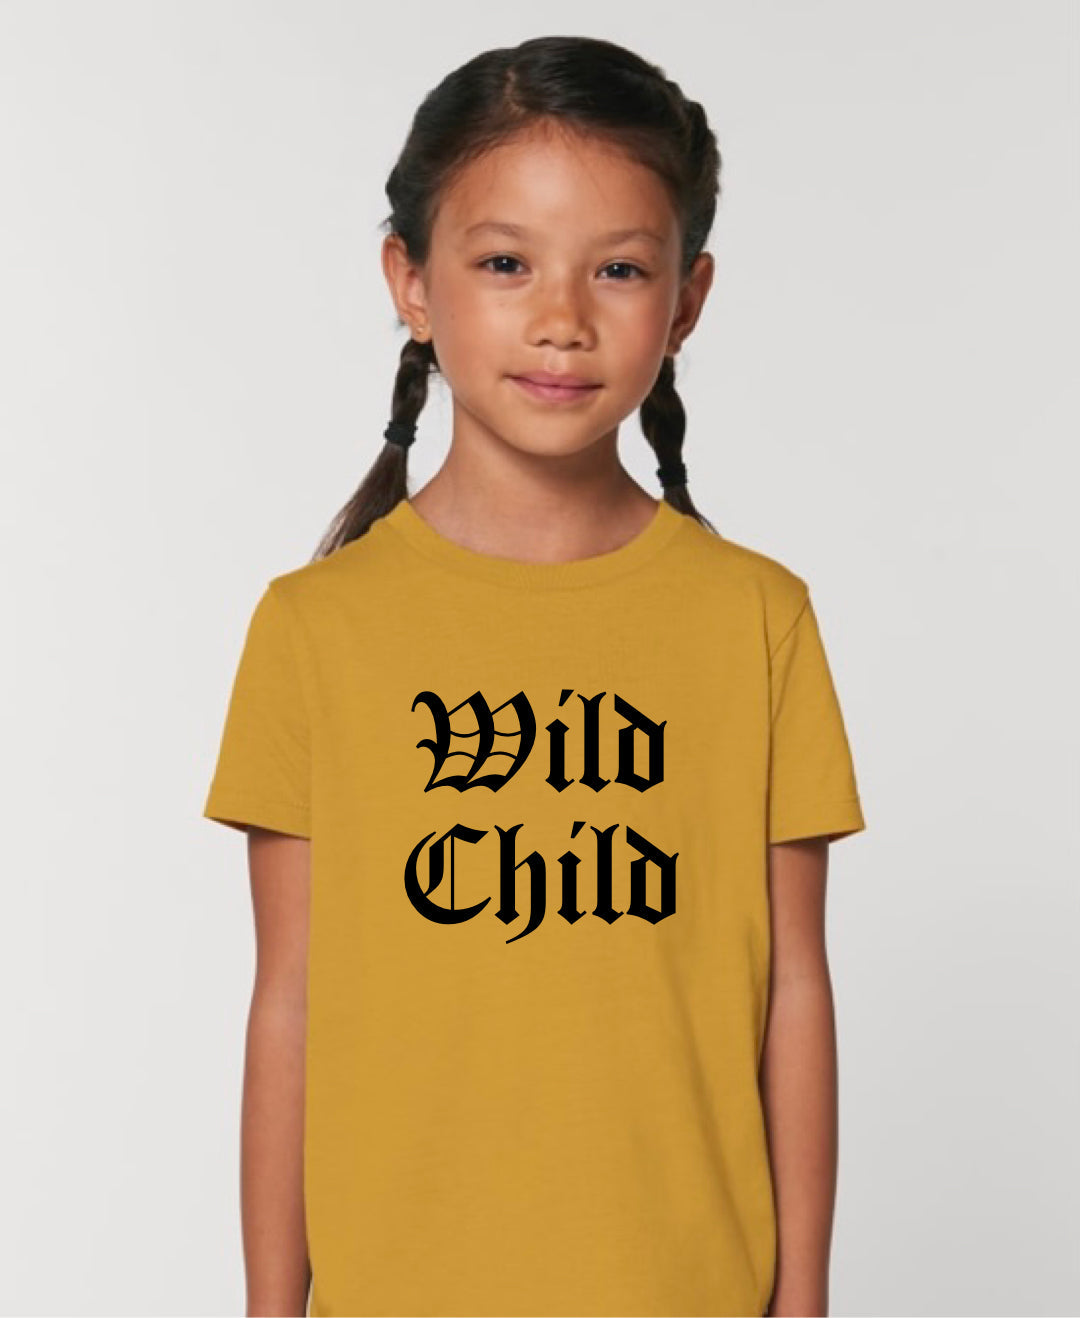 Wild Child Tee